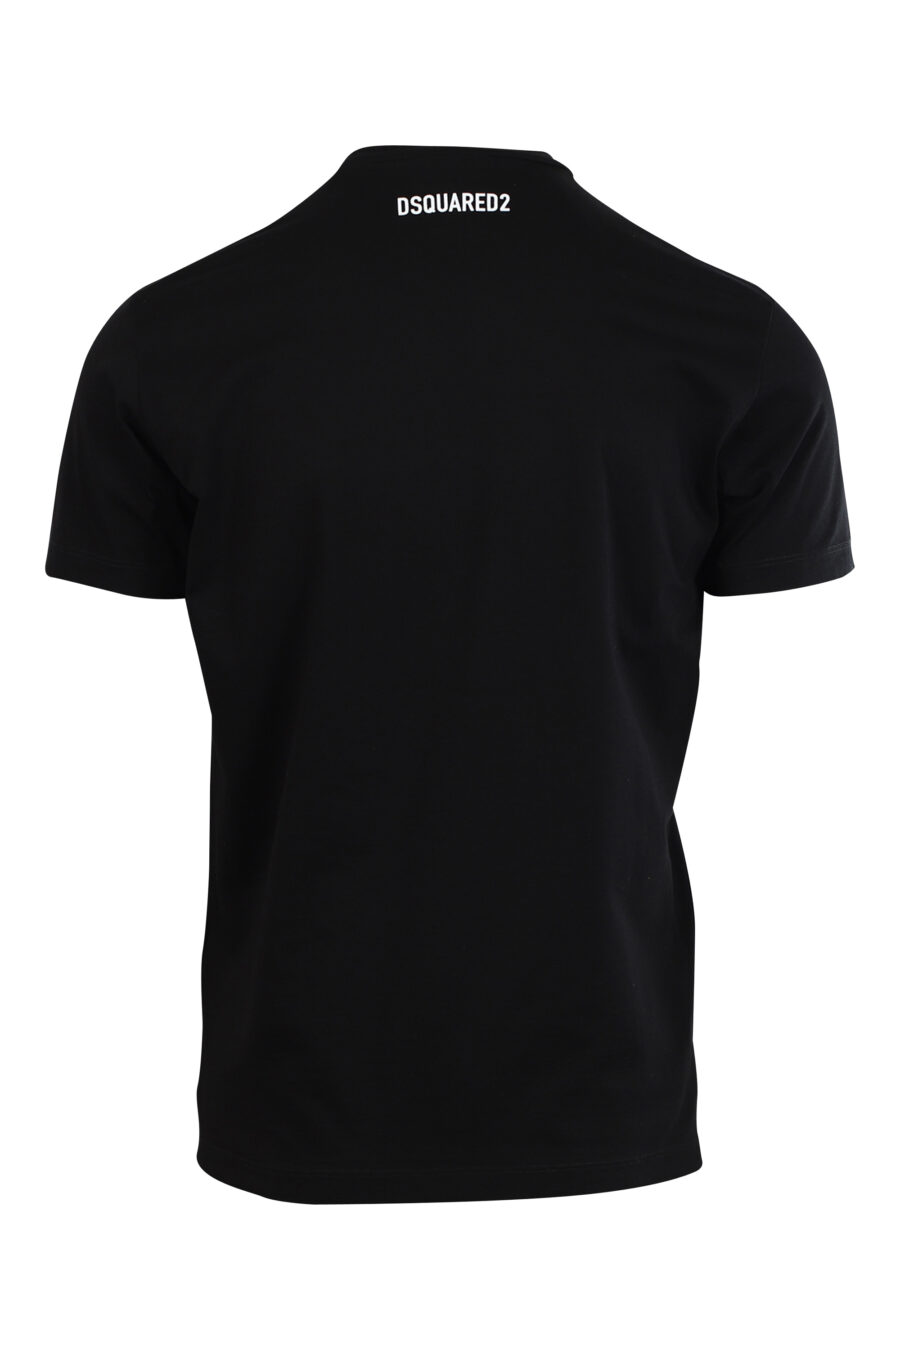 Black T-shirt with dog maxilogo "Pixeled" - 8052134980774 2